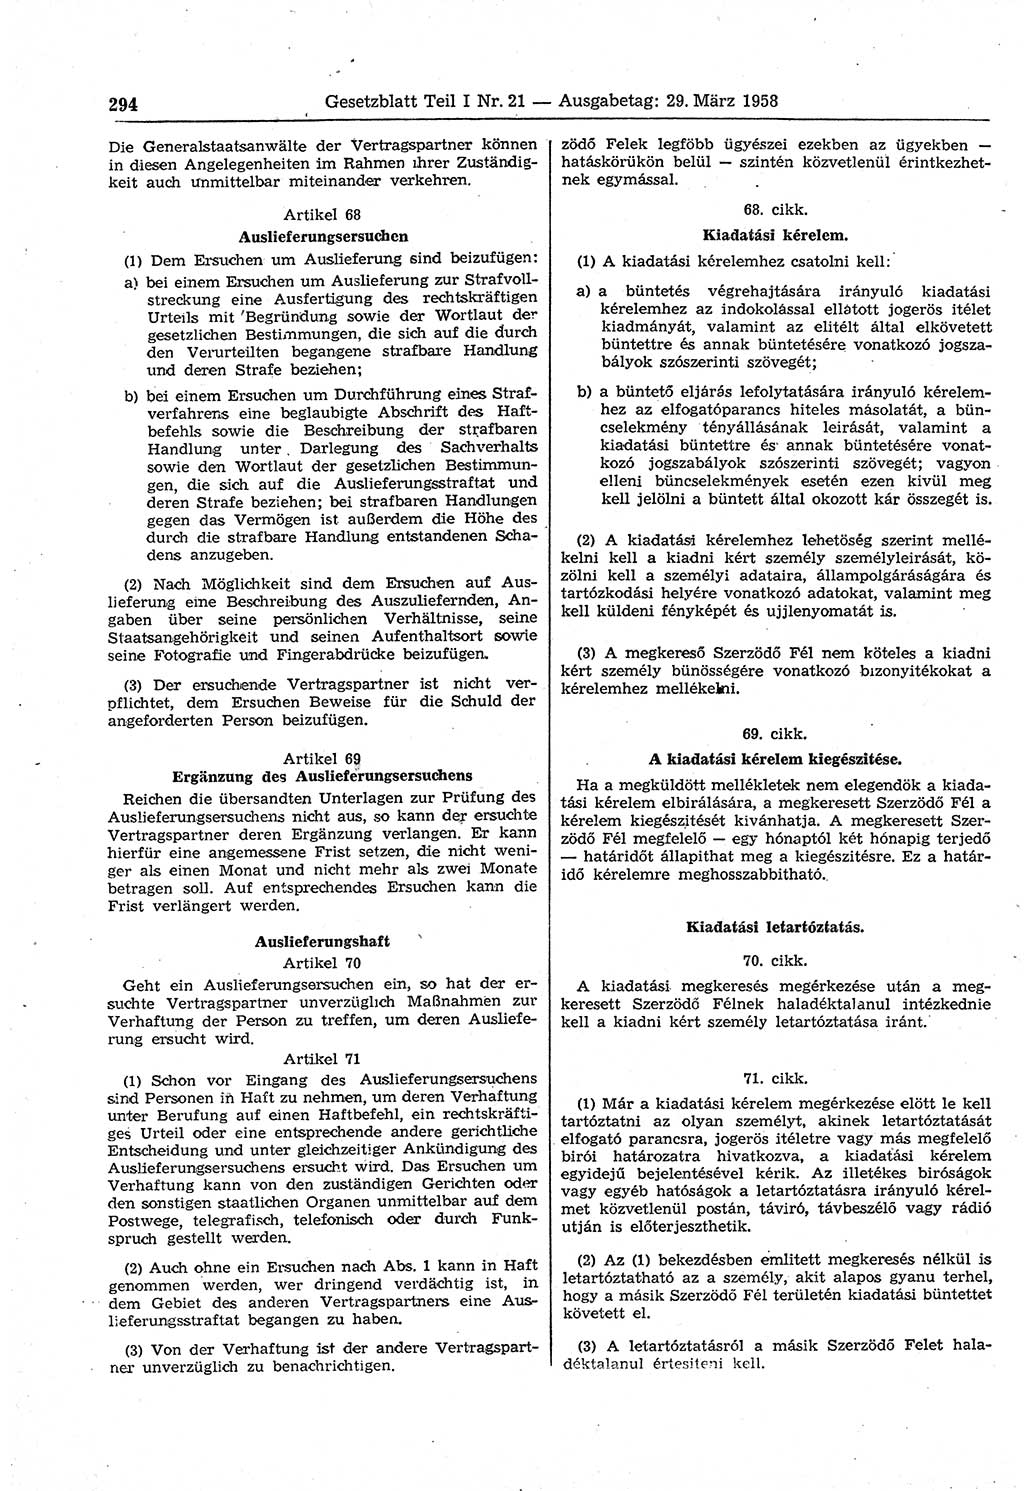 Gesetzblatt (GBl.) der Deutschen Demokratischen Republik (DDR) Teil Ⅰ 1958, Seite 294 (GBl. DDR Ⅰ 1958, S. 294)